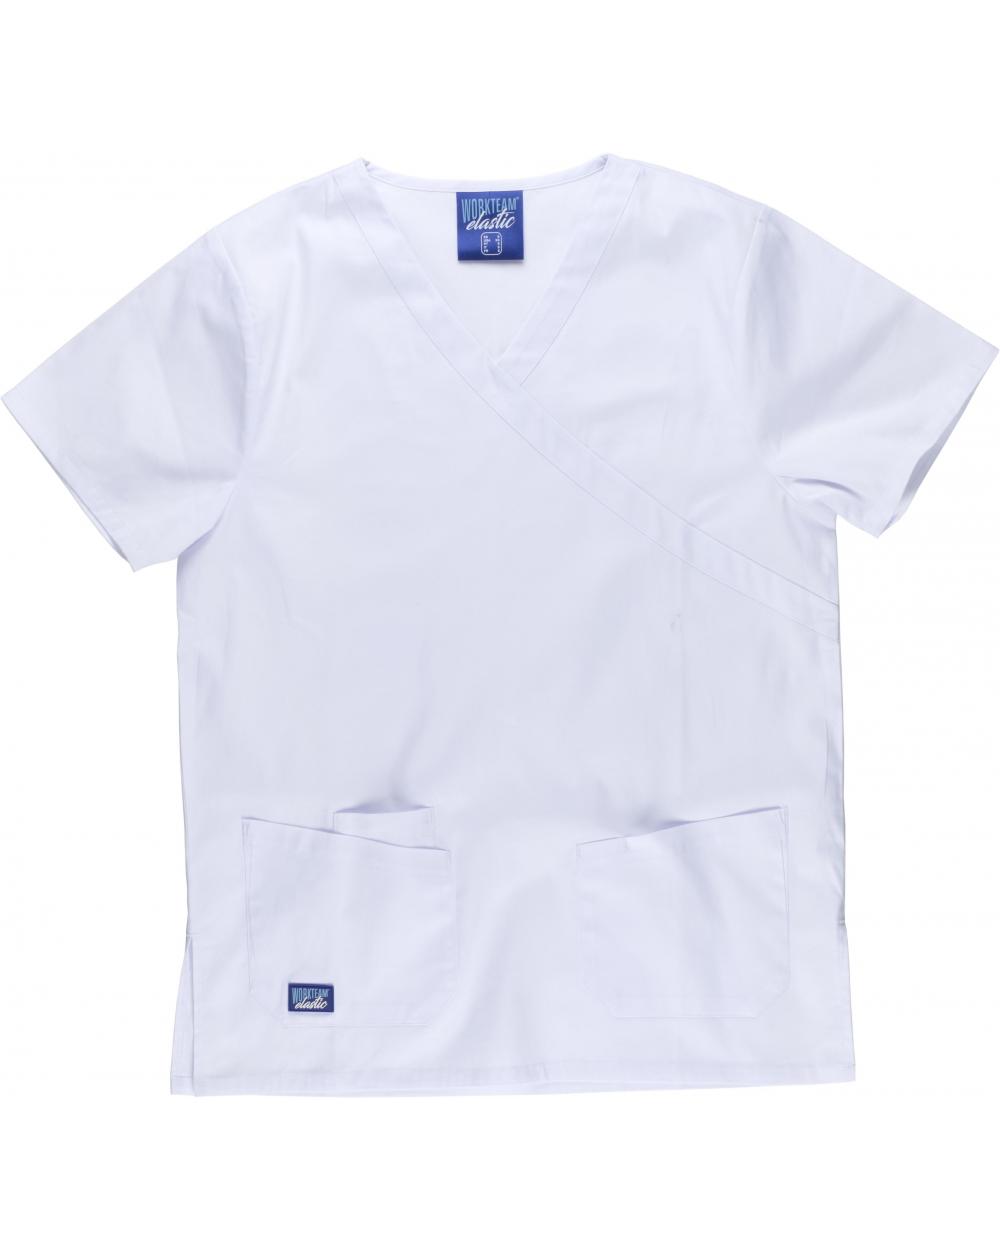 Comprar Conjunto pijama sanitario elastico B9150 Blanco workteam camisa delante